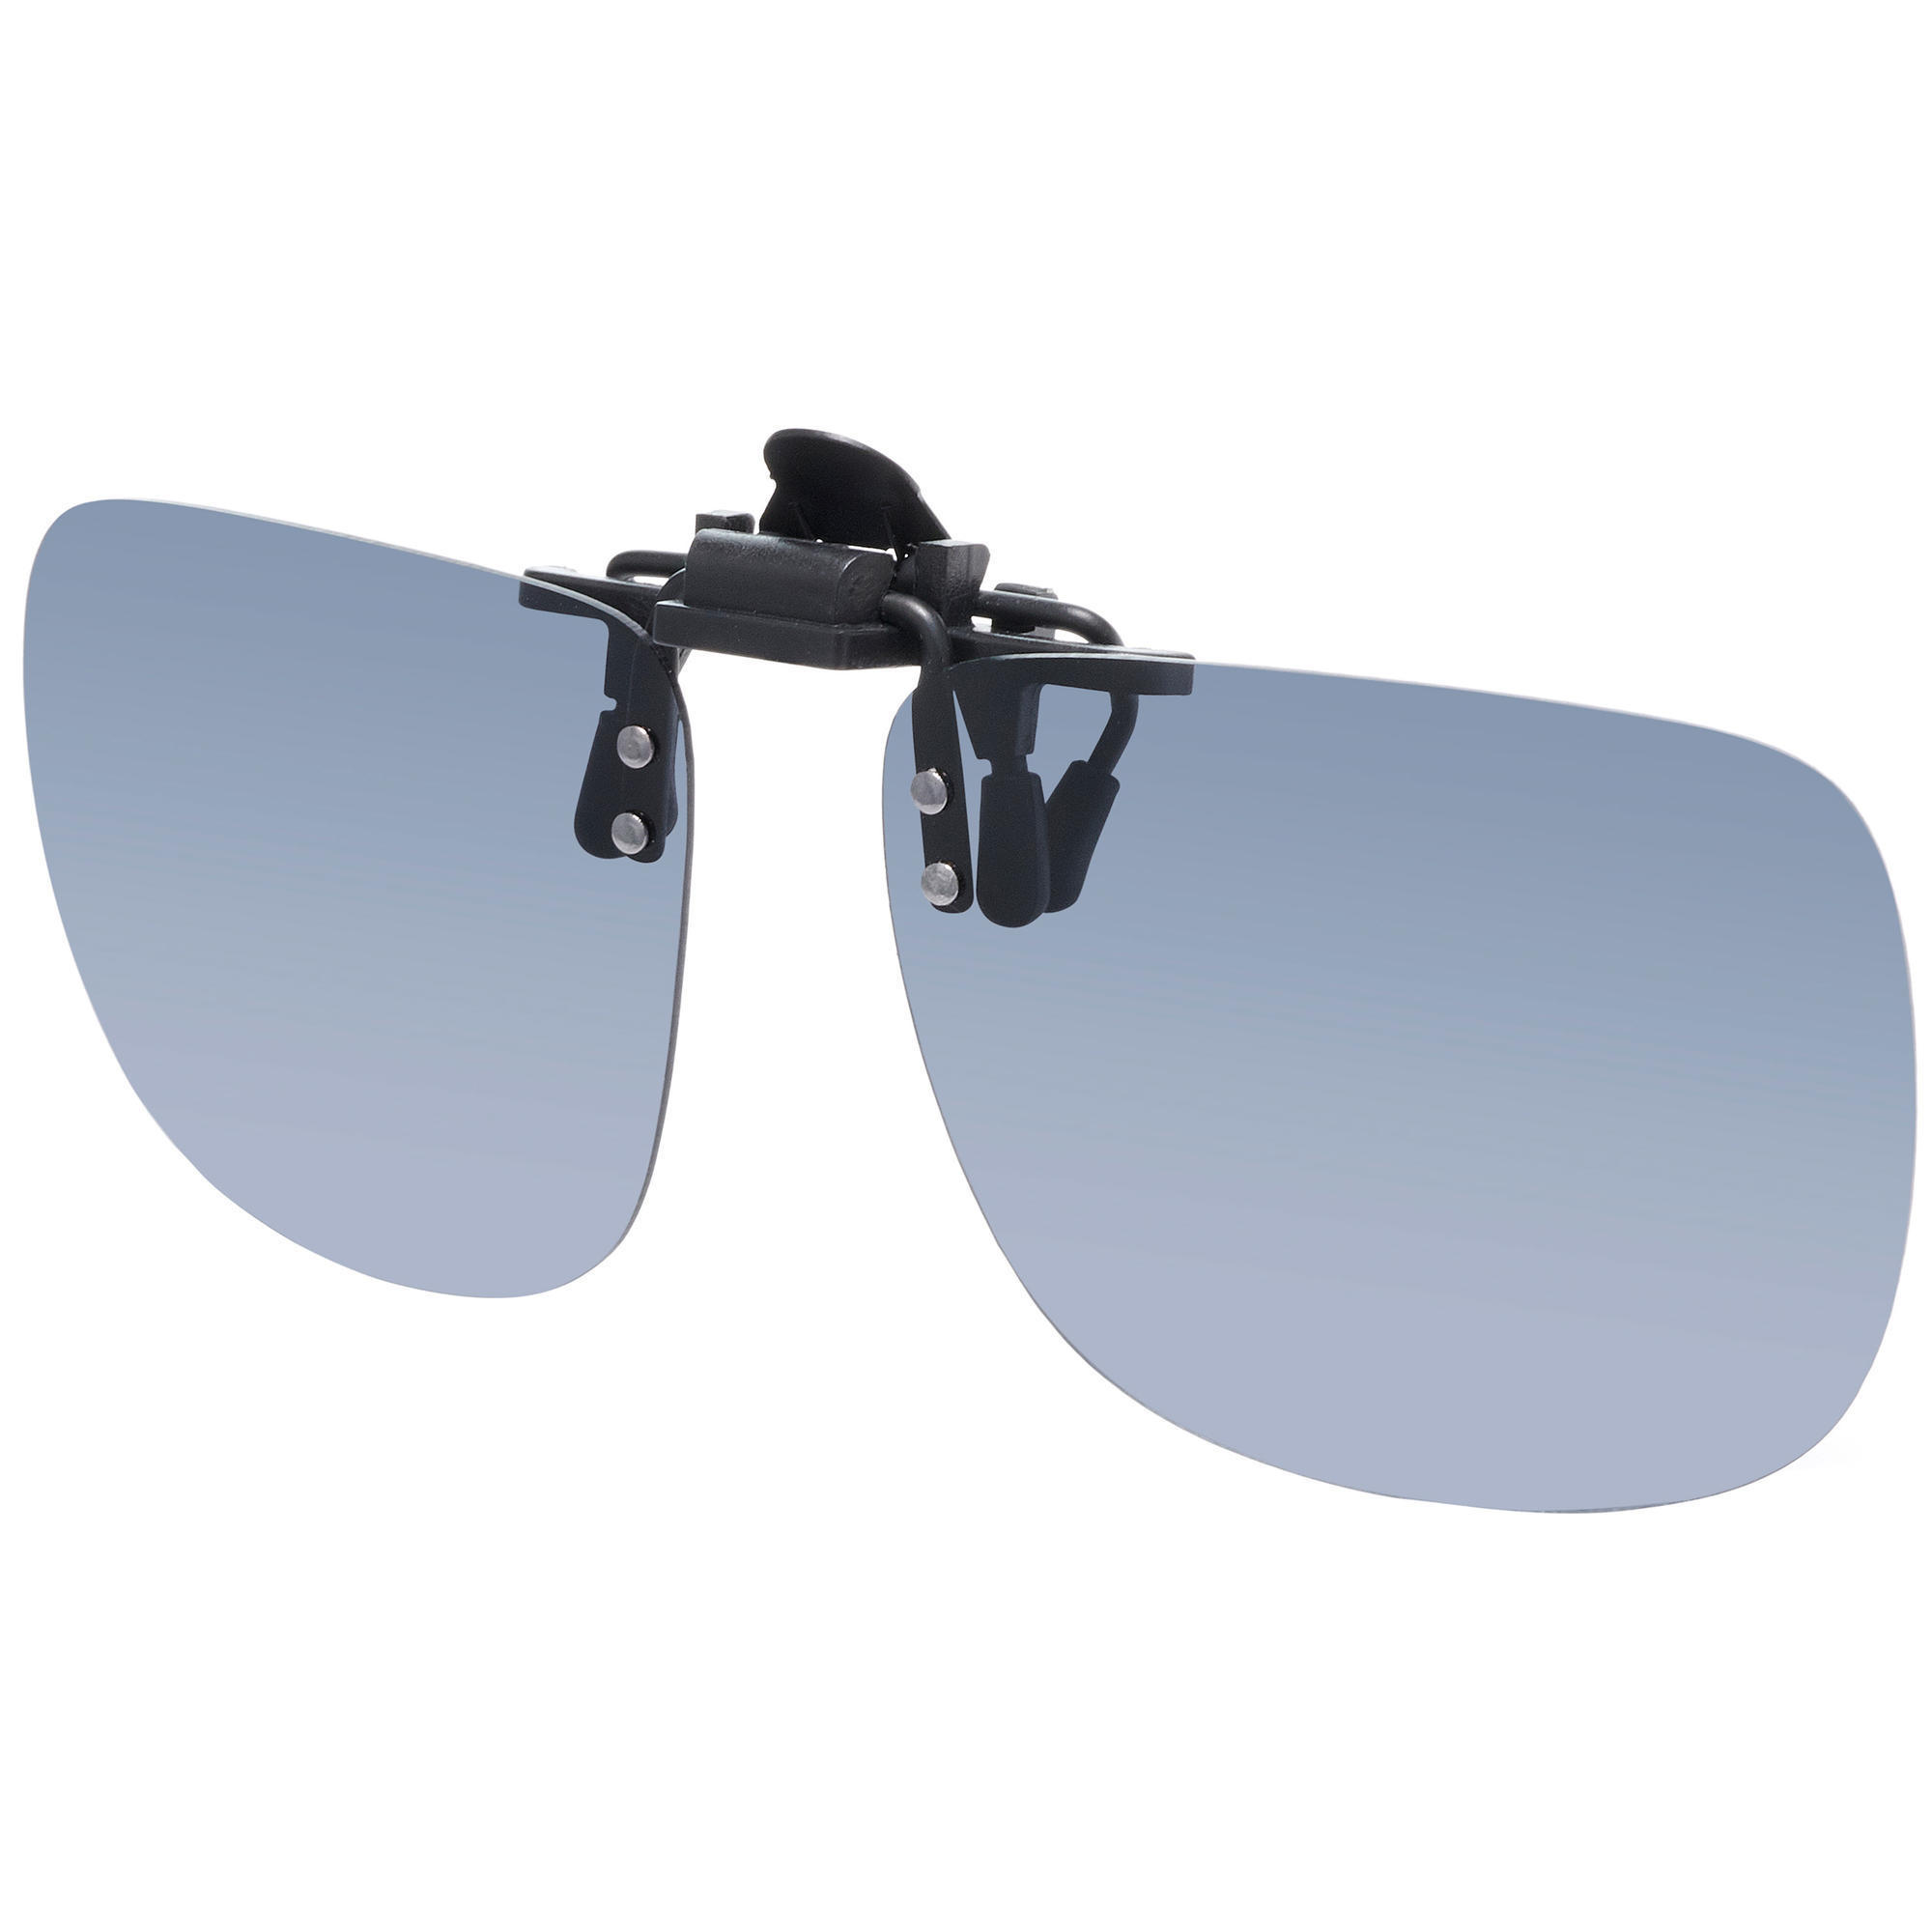 ACVIP Brillenband Mehrfarbig Seil Accessoire für Unisex Sonnenbrille und Lesebrille Brillenkordel Gläser Halterung Brillenschnur 